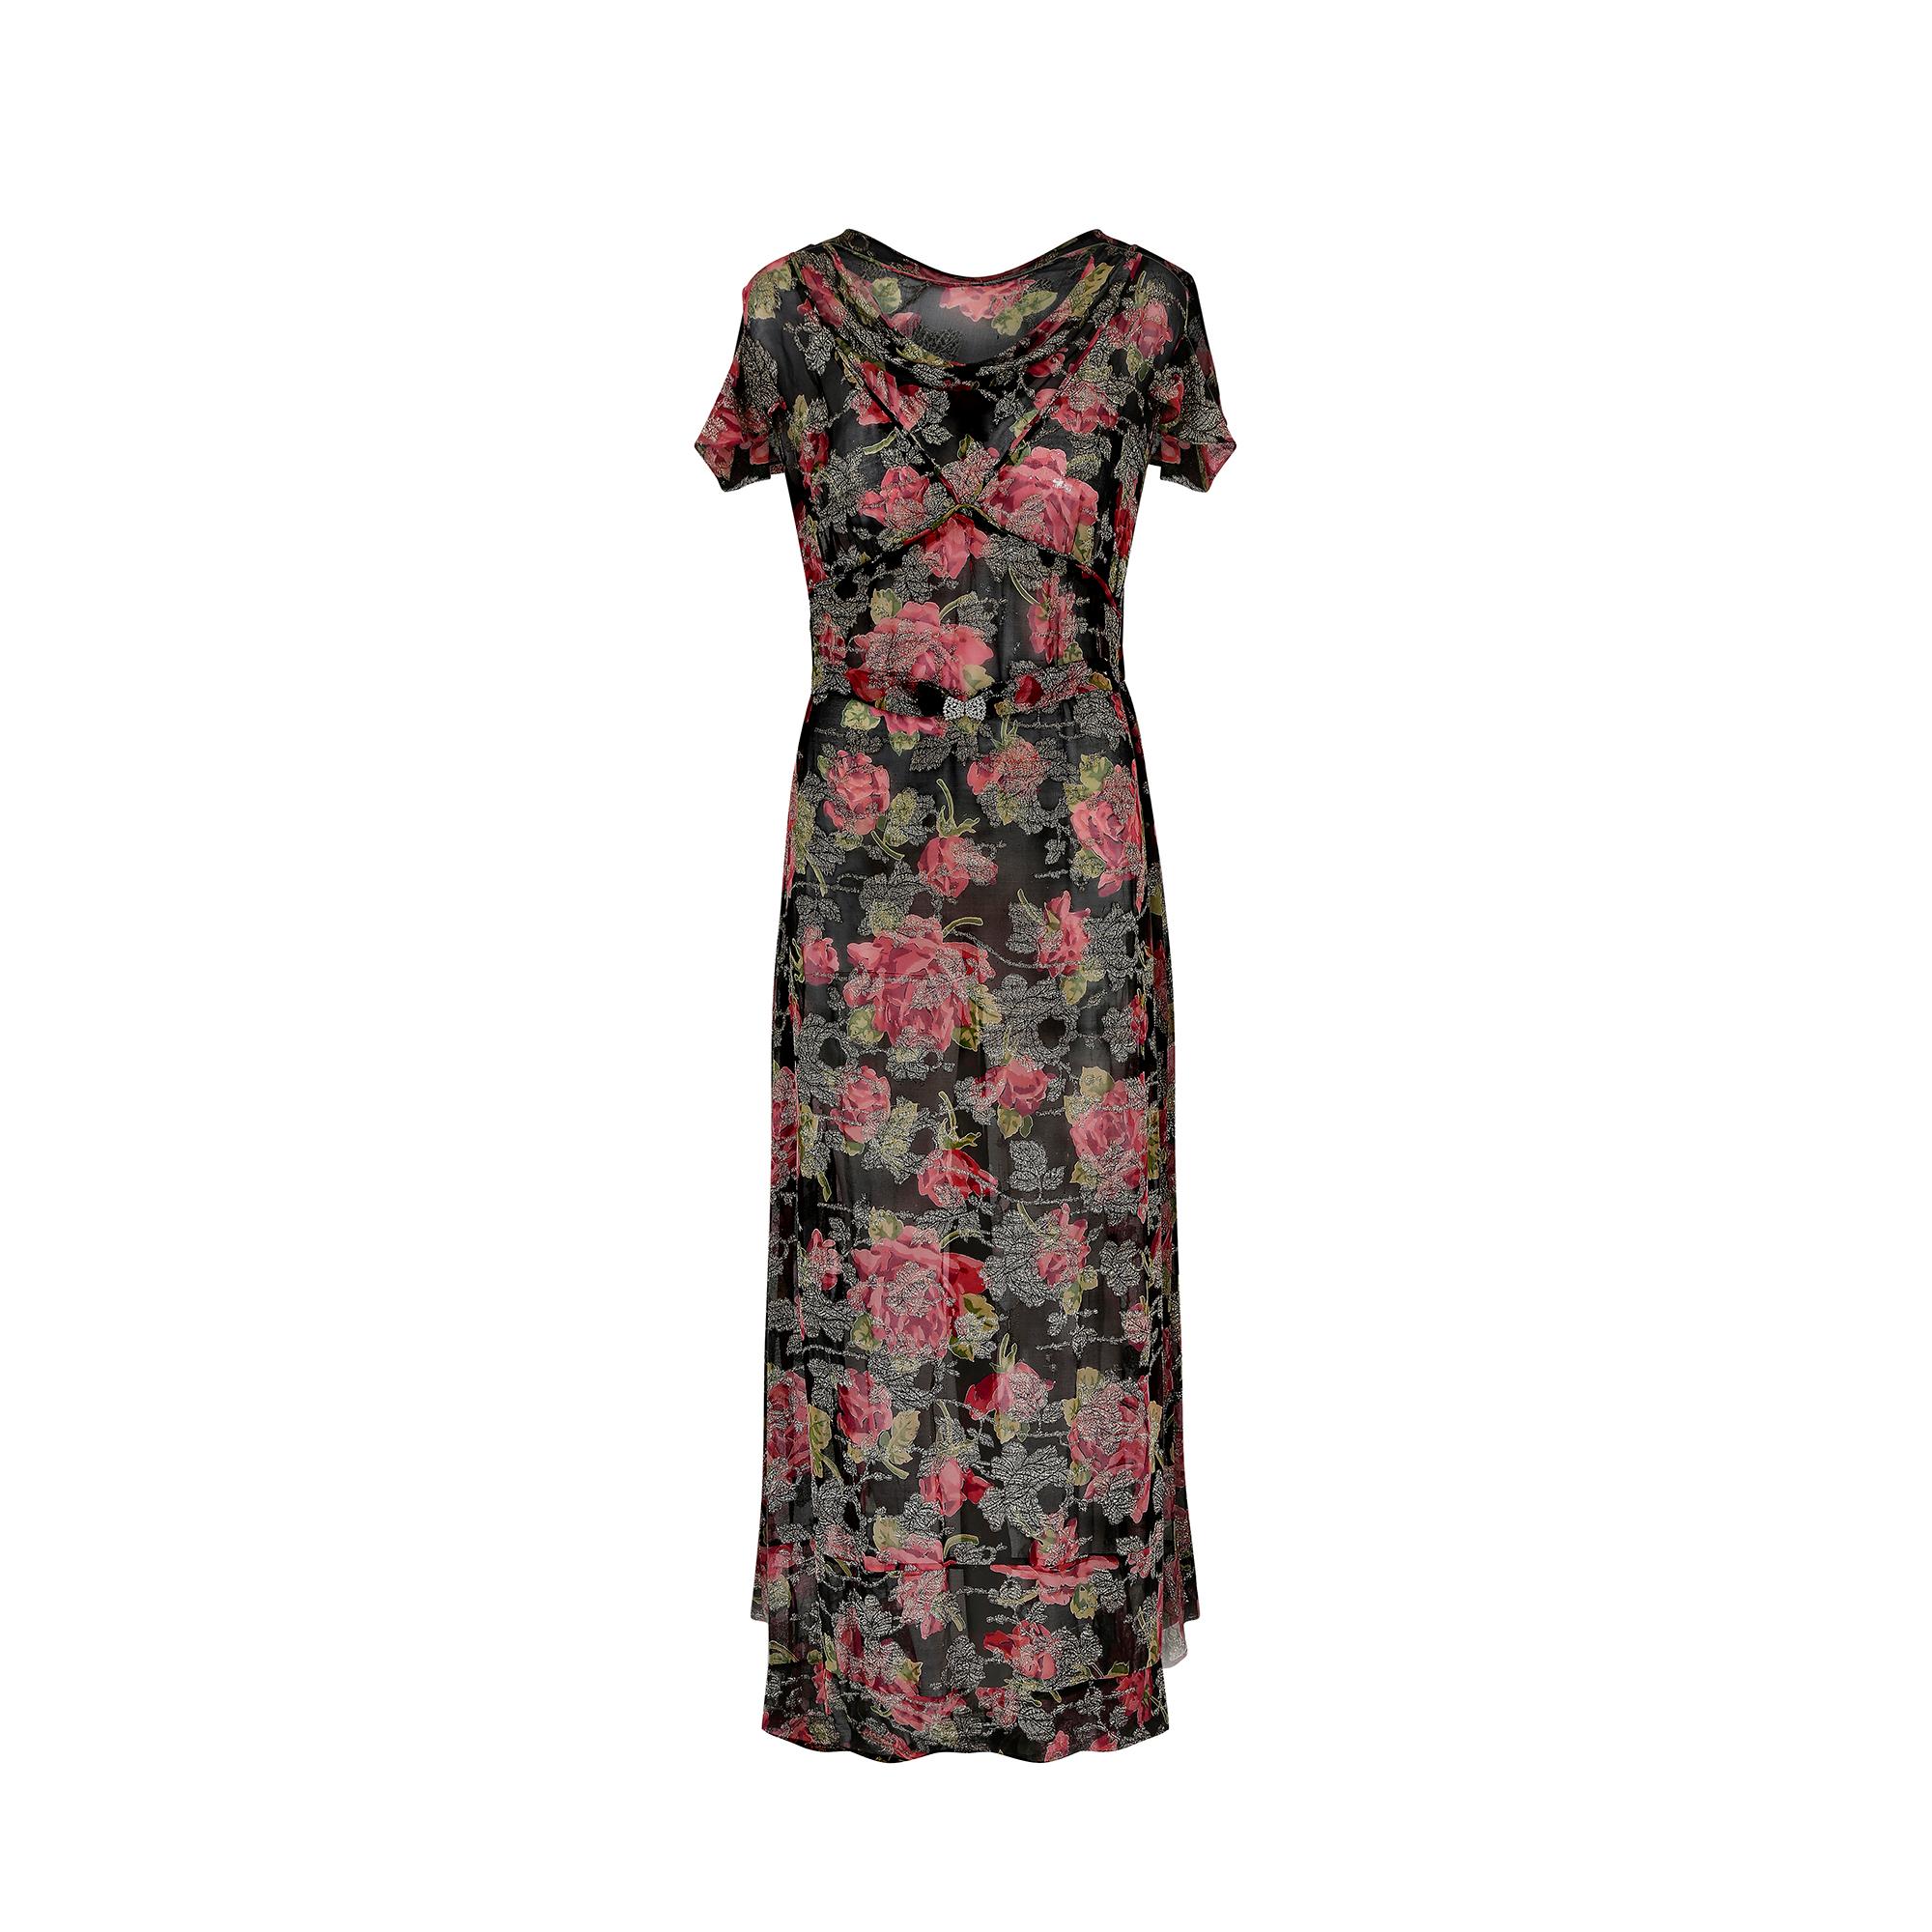 Cette robe en mousseline de soie des années 1930 est ornée d'un magnifique motif de roses et de délicats détails en lames de couleur champagne. Elle est coupée dans le biais classique, avec un col bénitier légèrement lesté. Il s'agit d'une